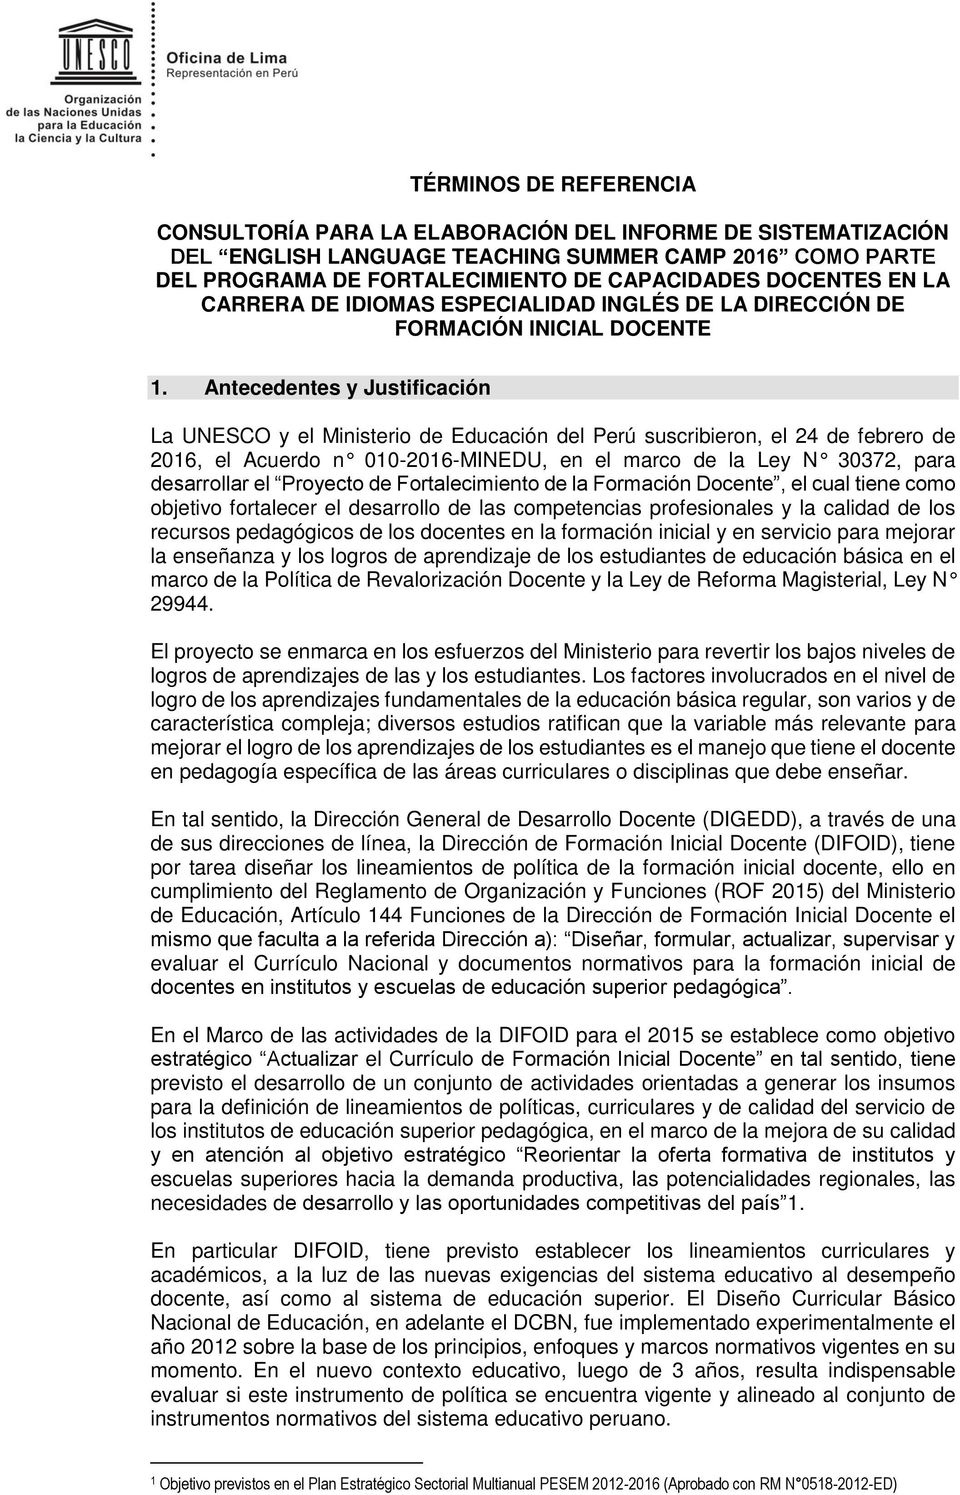 Antecedentes y Justificación La UNESCO y el Ministerio de Educación del Perú suscribieron, el 24 de febrero de 2016, el Acuerdo n 010-2016-MINEDU, en el marco de la Ley N 30372, para desarrollar el